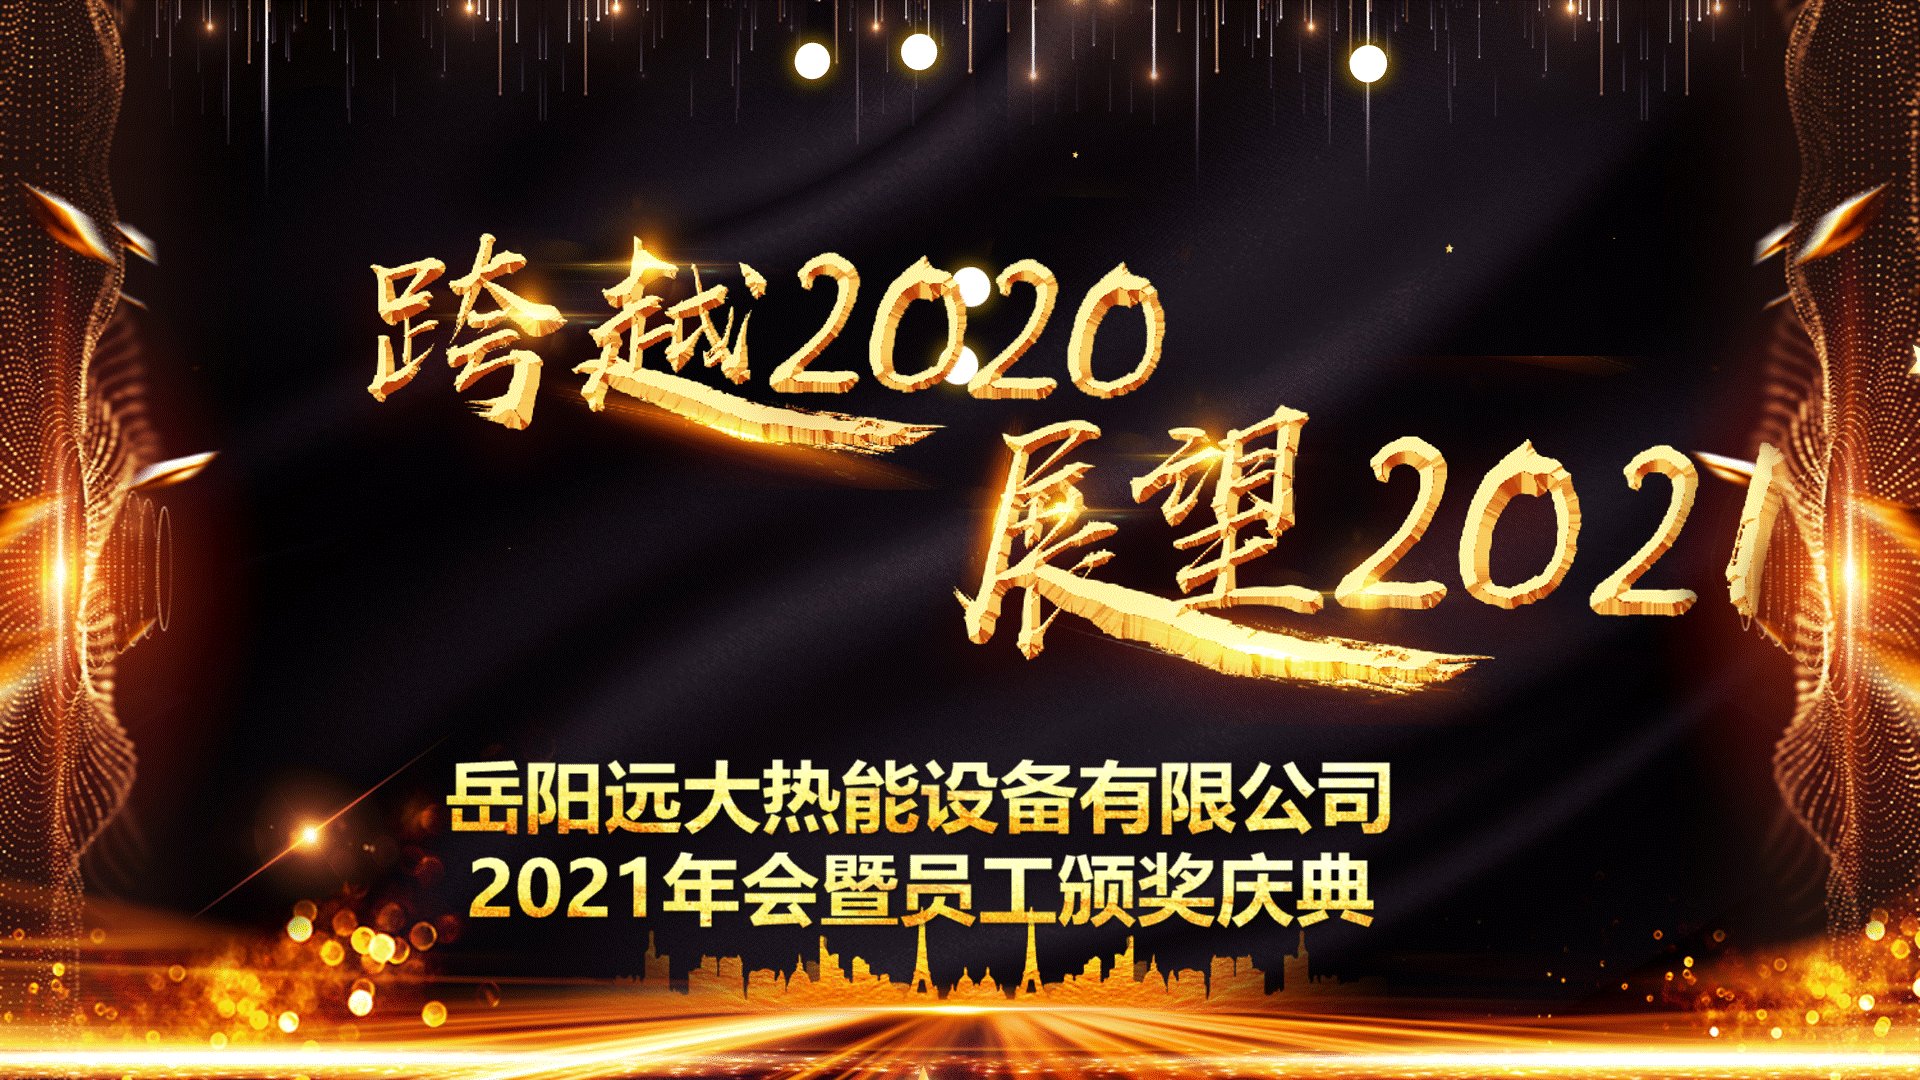 年会报道|"跨越2020,展望2021"2021年岳阳远大热能设备有限公司年会